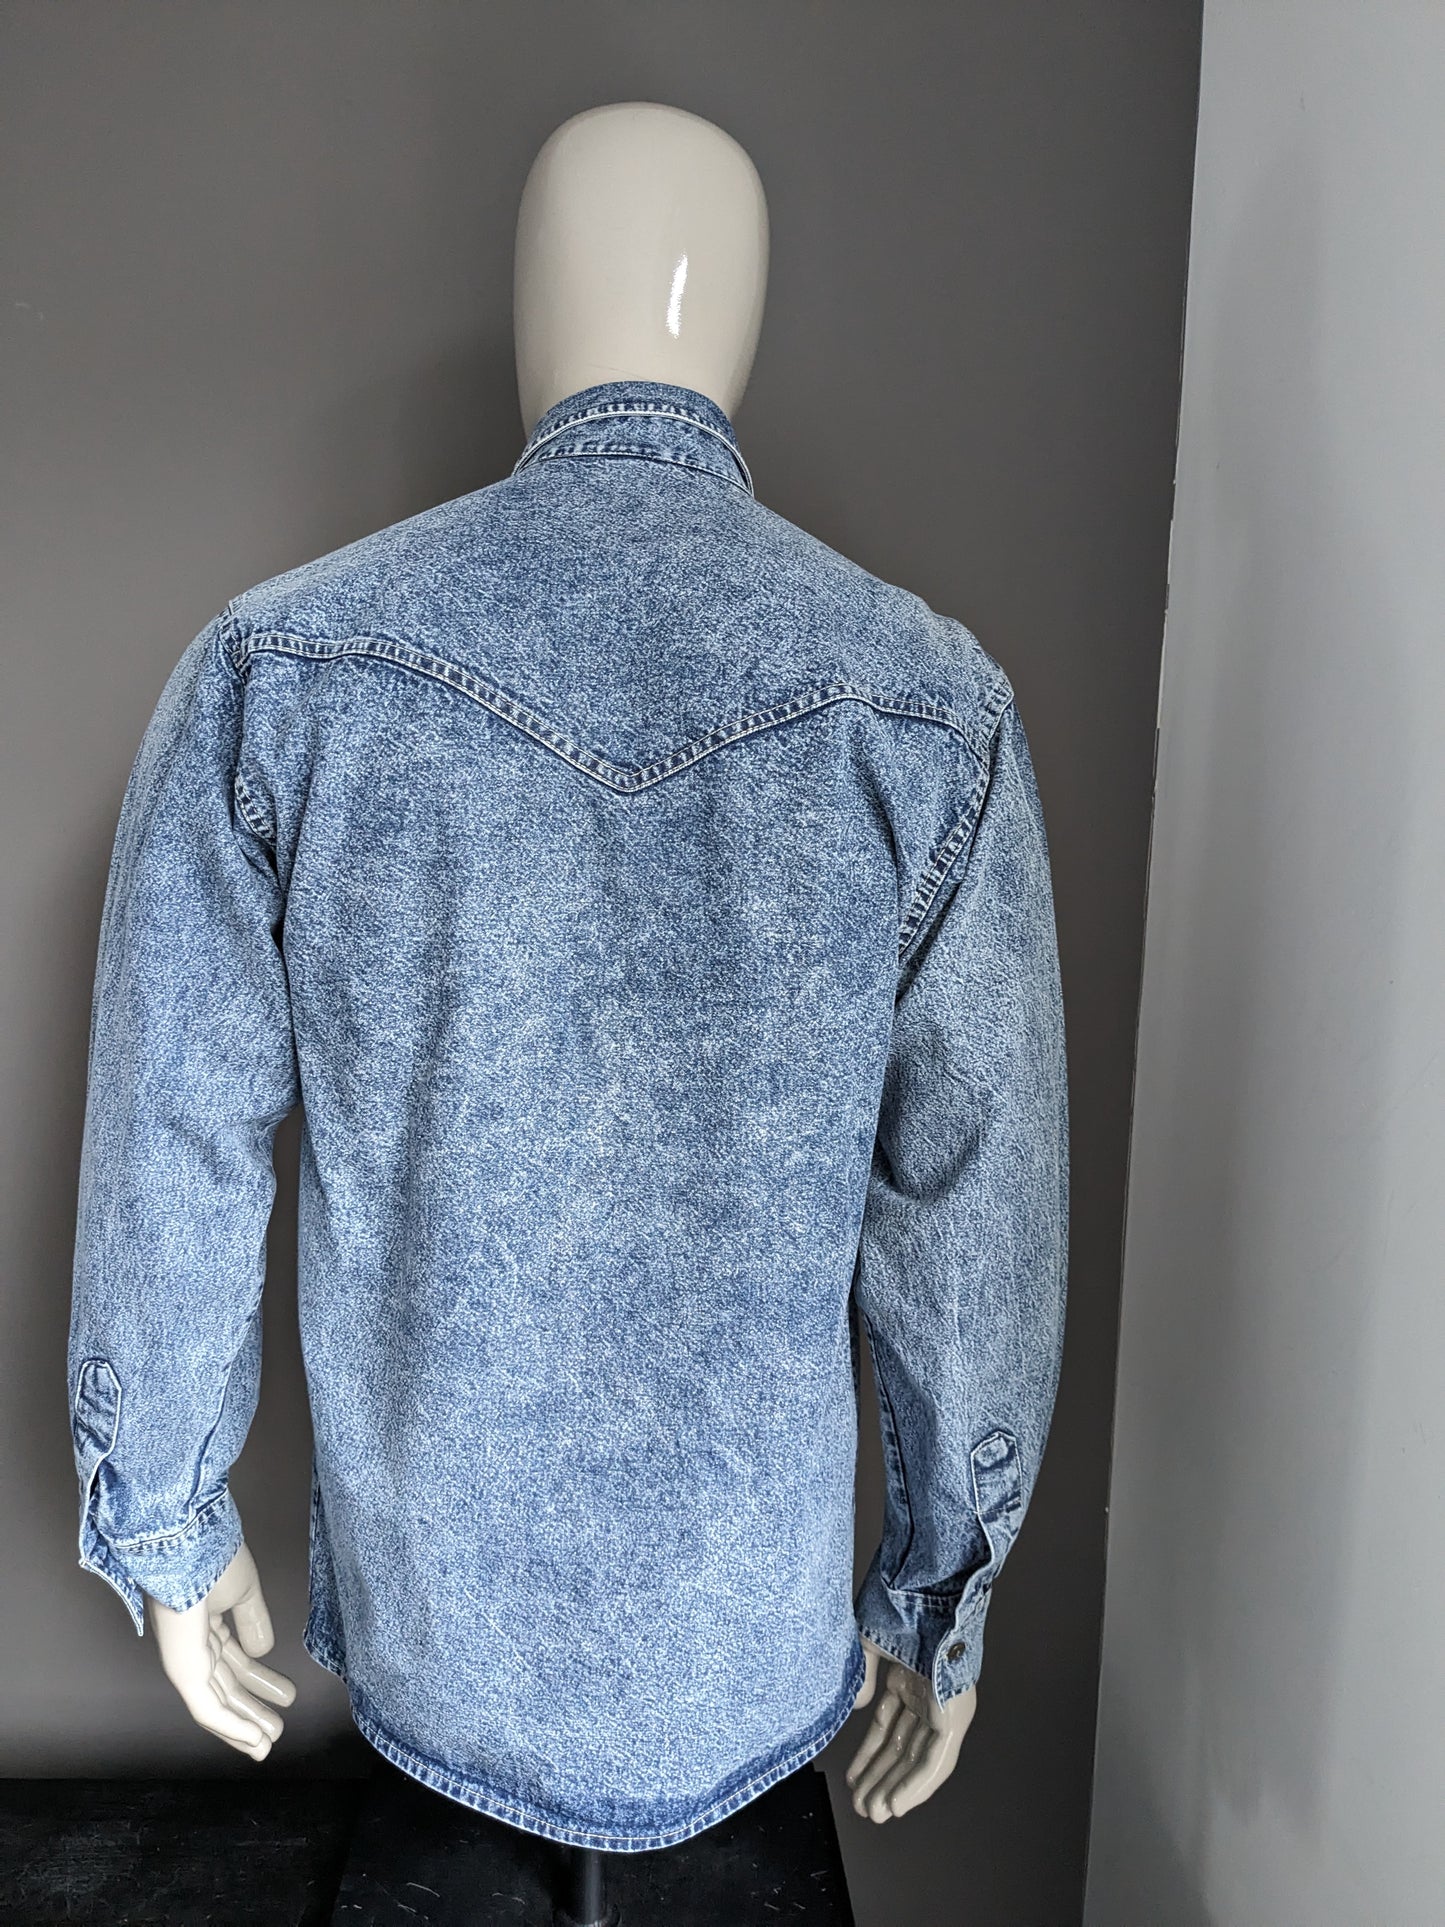 Vintage FIMSE Jeans Camisa Fabrica más gruesa. Azul mezclado. Talla L.